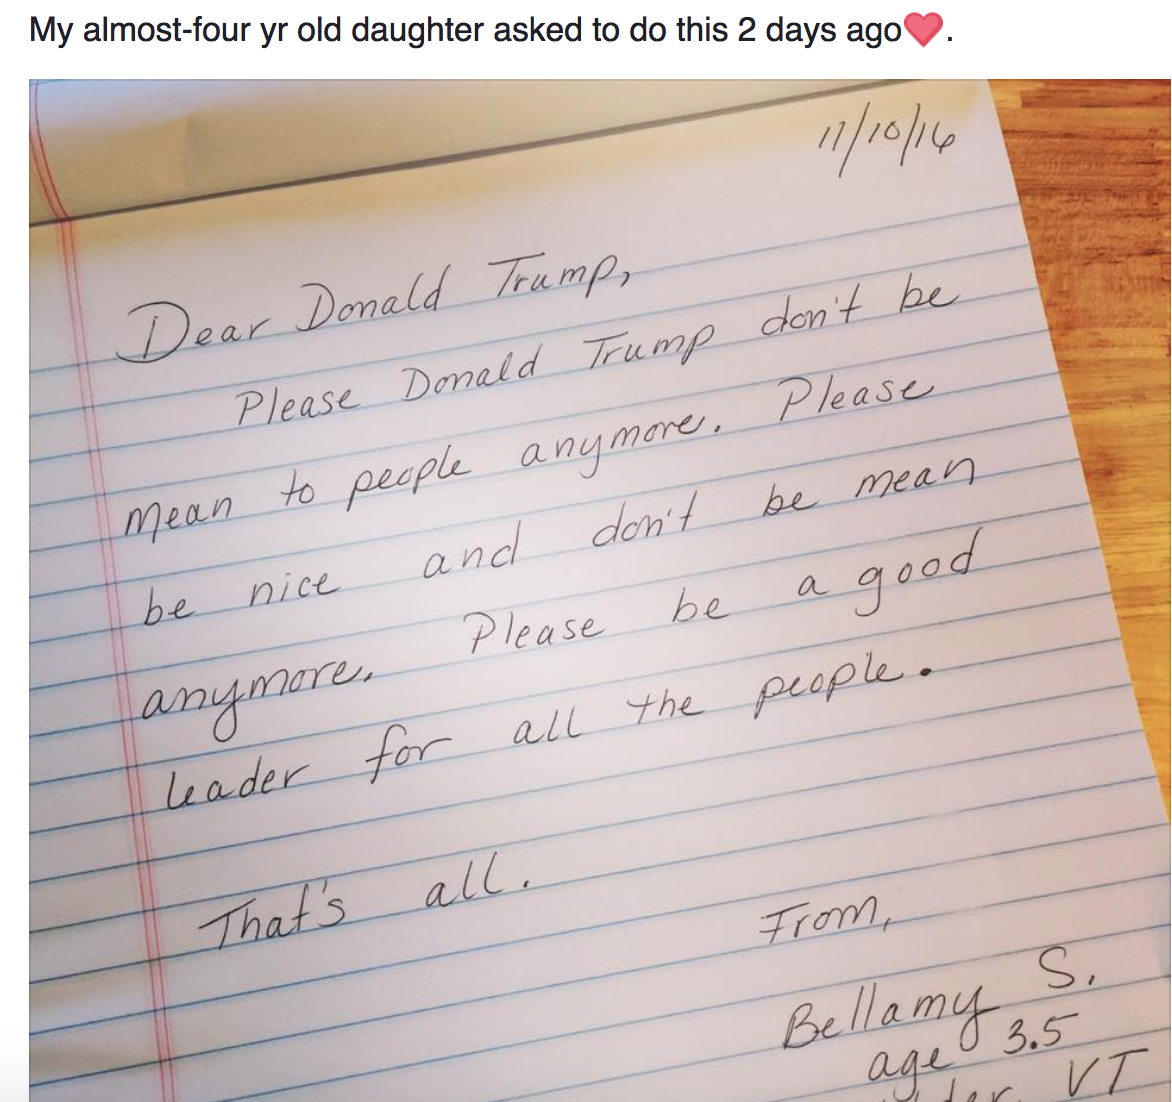 Kids write letters asking President